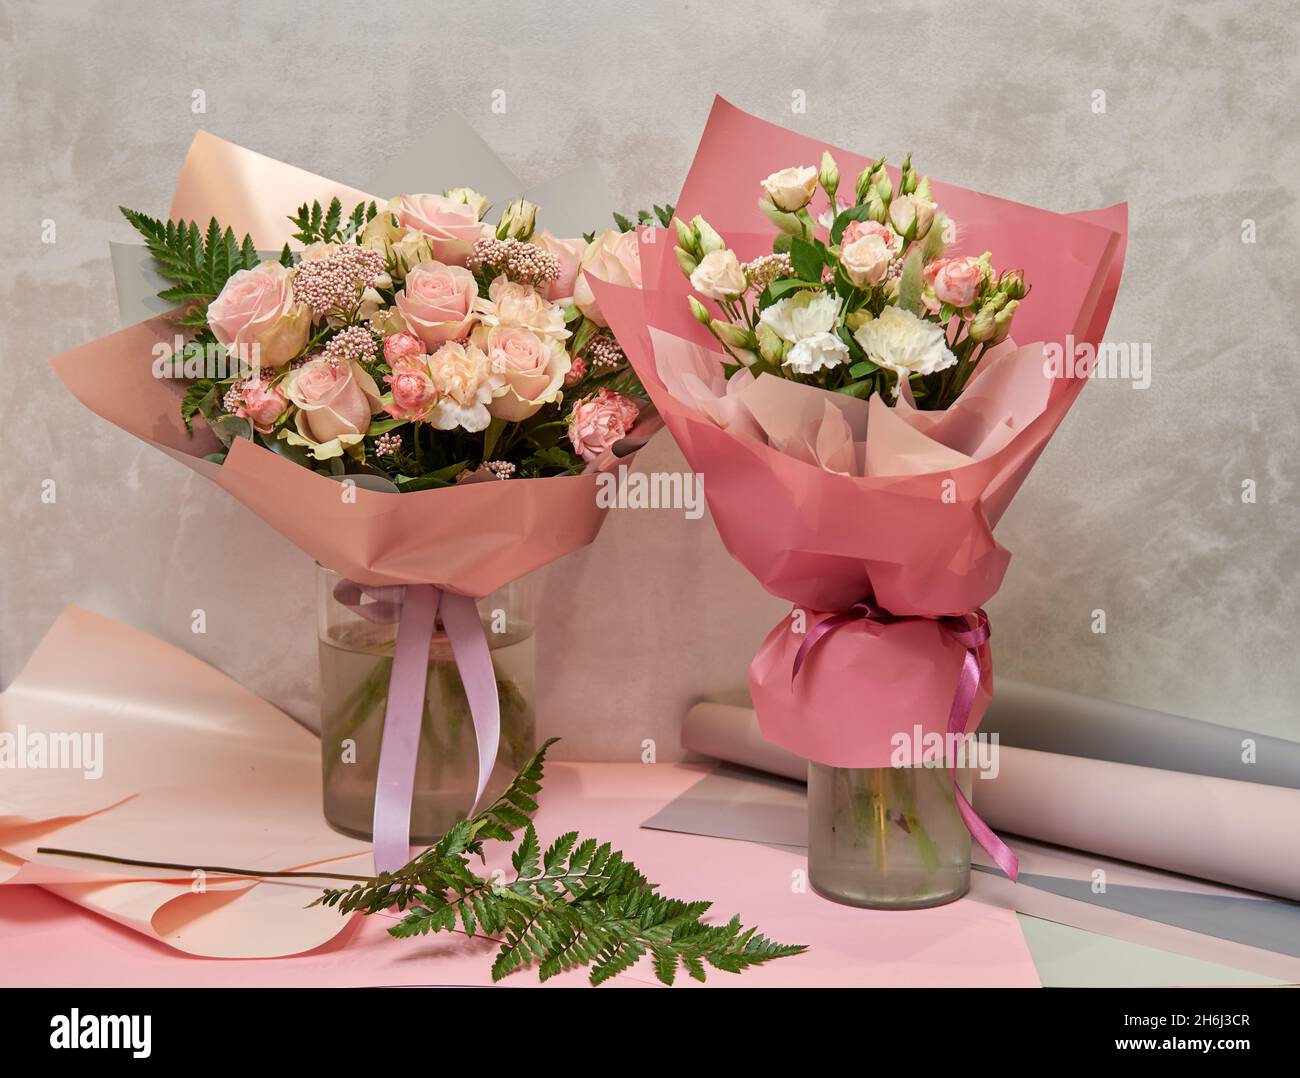 Bouquet frais et luxuriant de fleurs colorées.Concept de boutique florale européenne.Livraison de fleurs.Magnifiques fleurs fraîches dans la boutique de fleuriste Banque D'Images